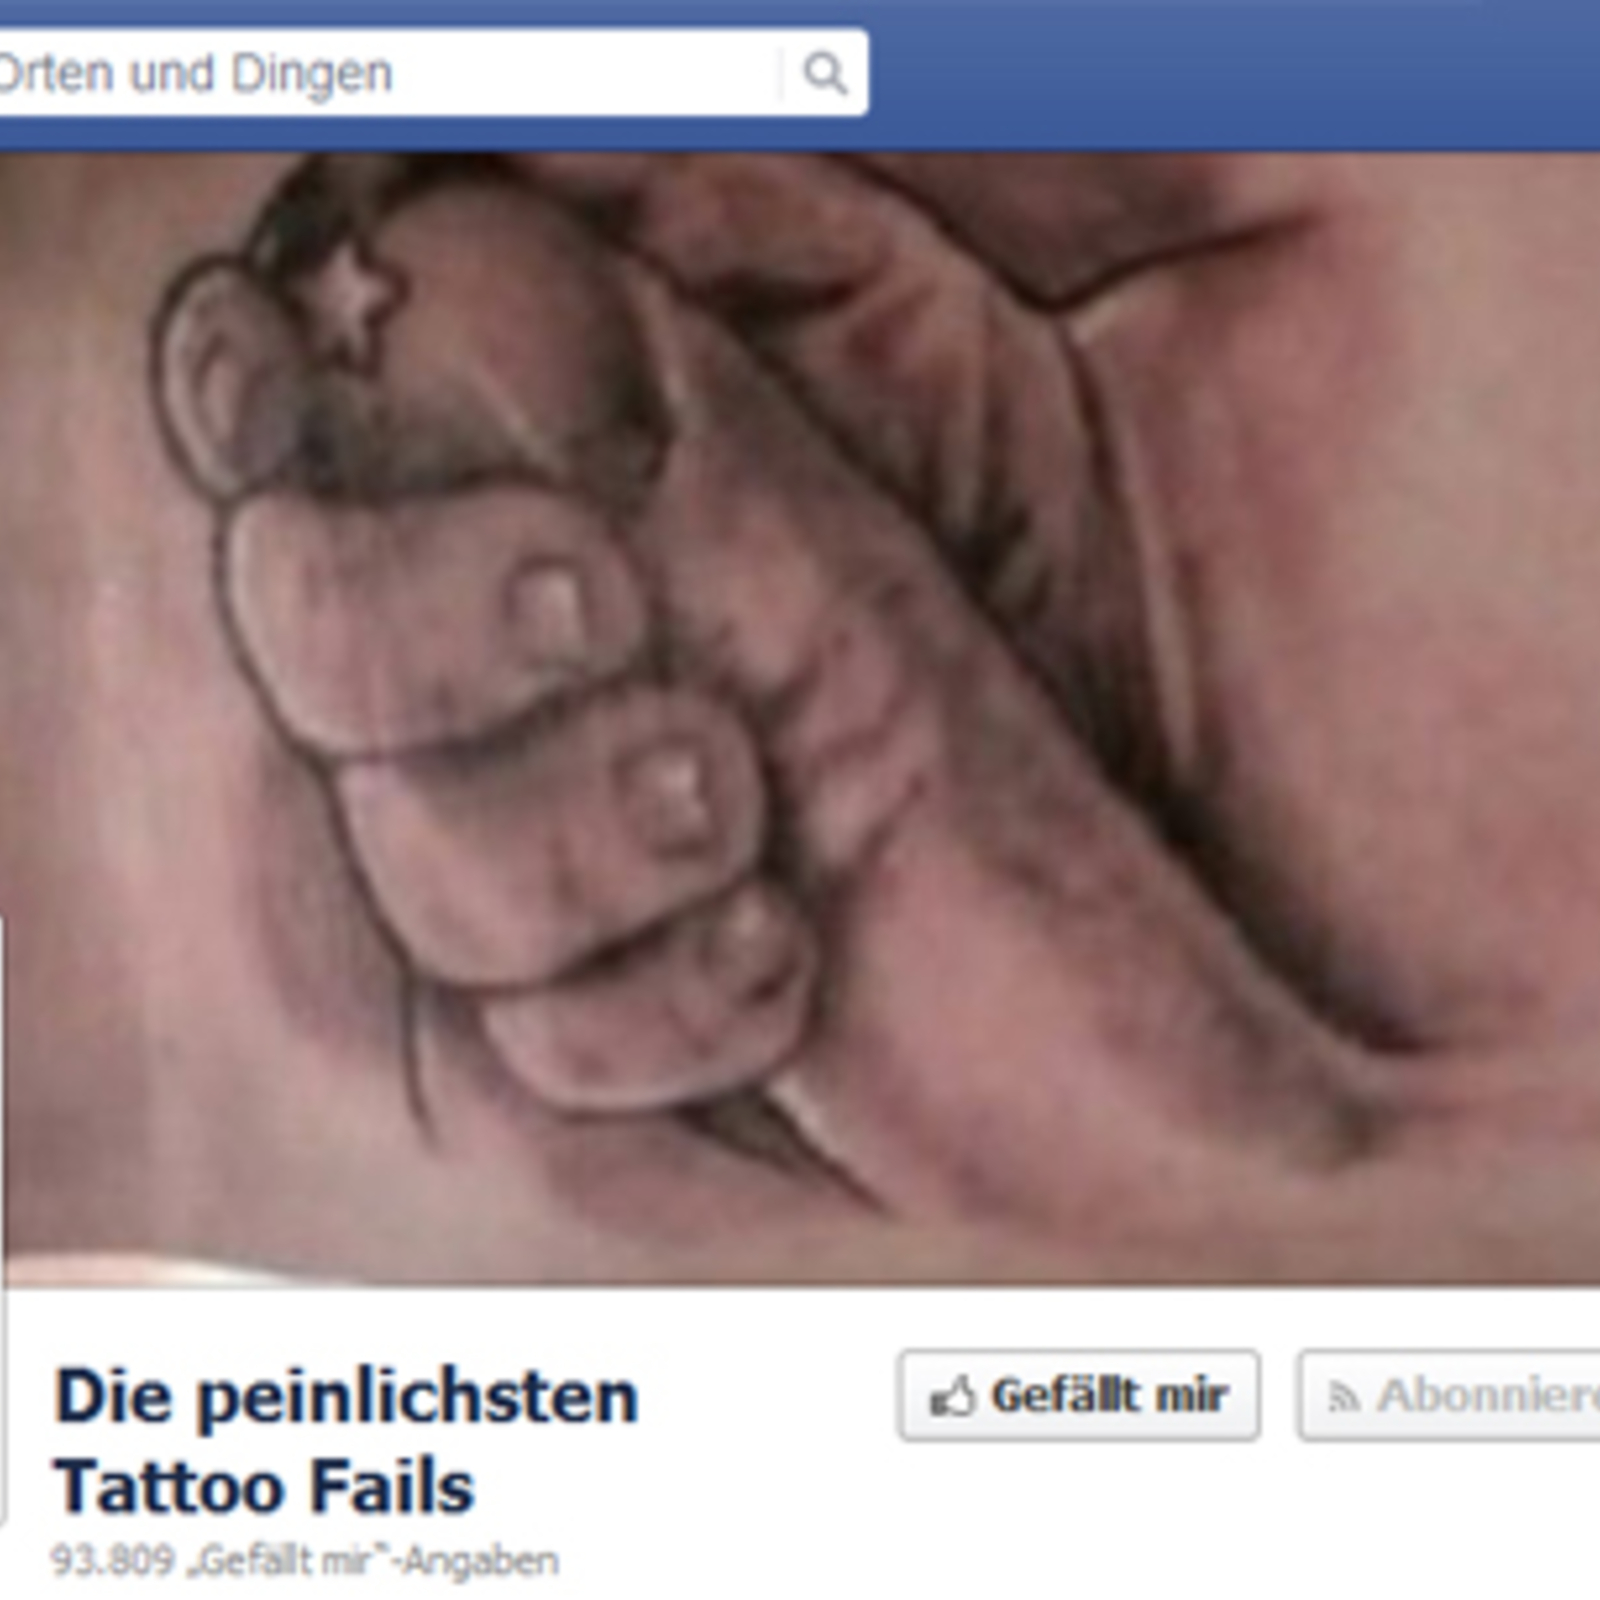 Facebook-Seite zeigt peinlichste Tattoos